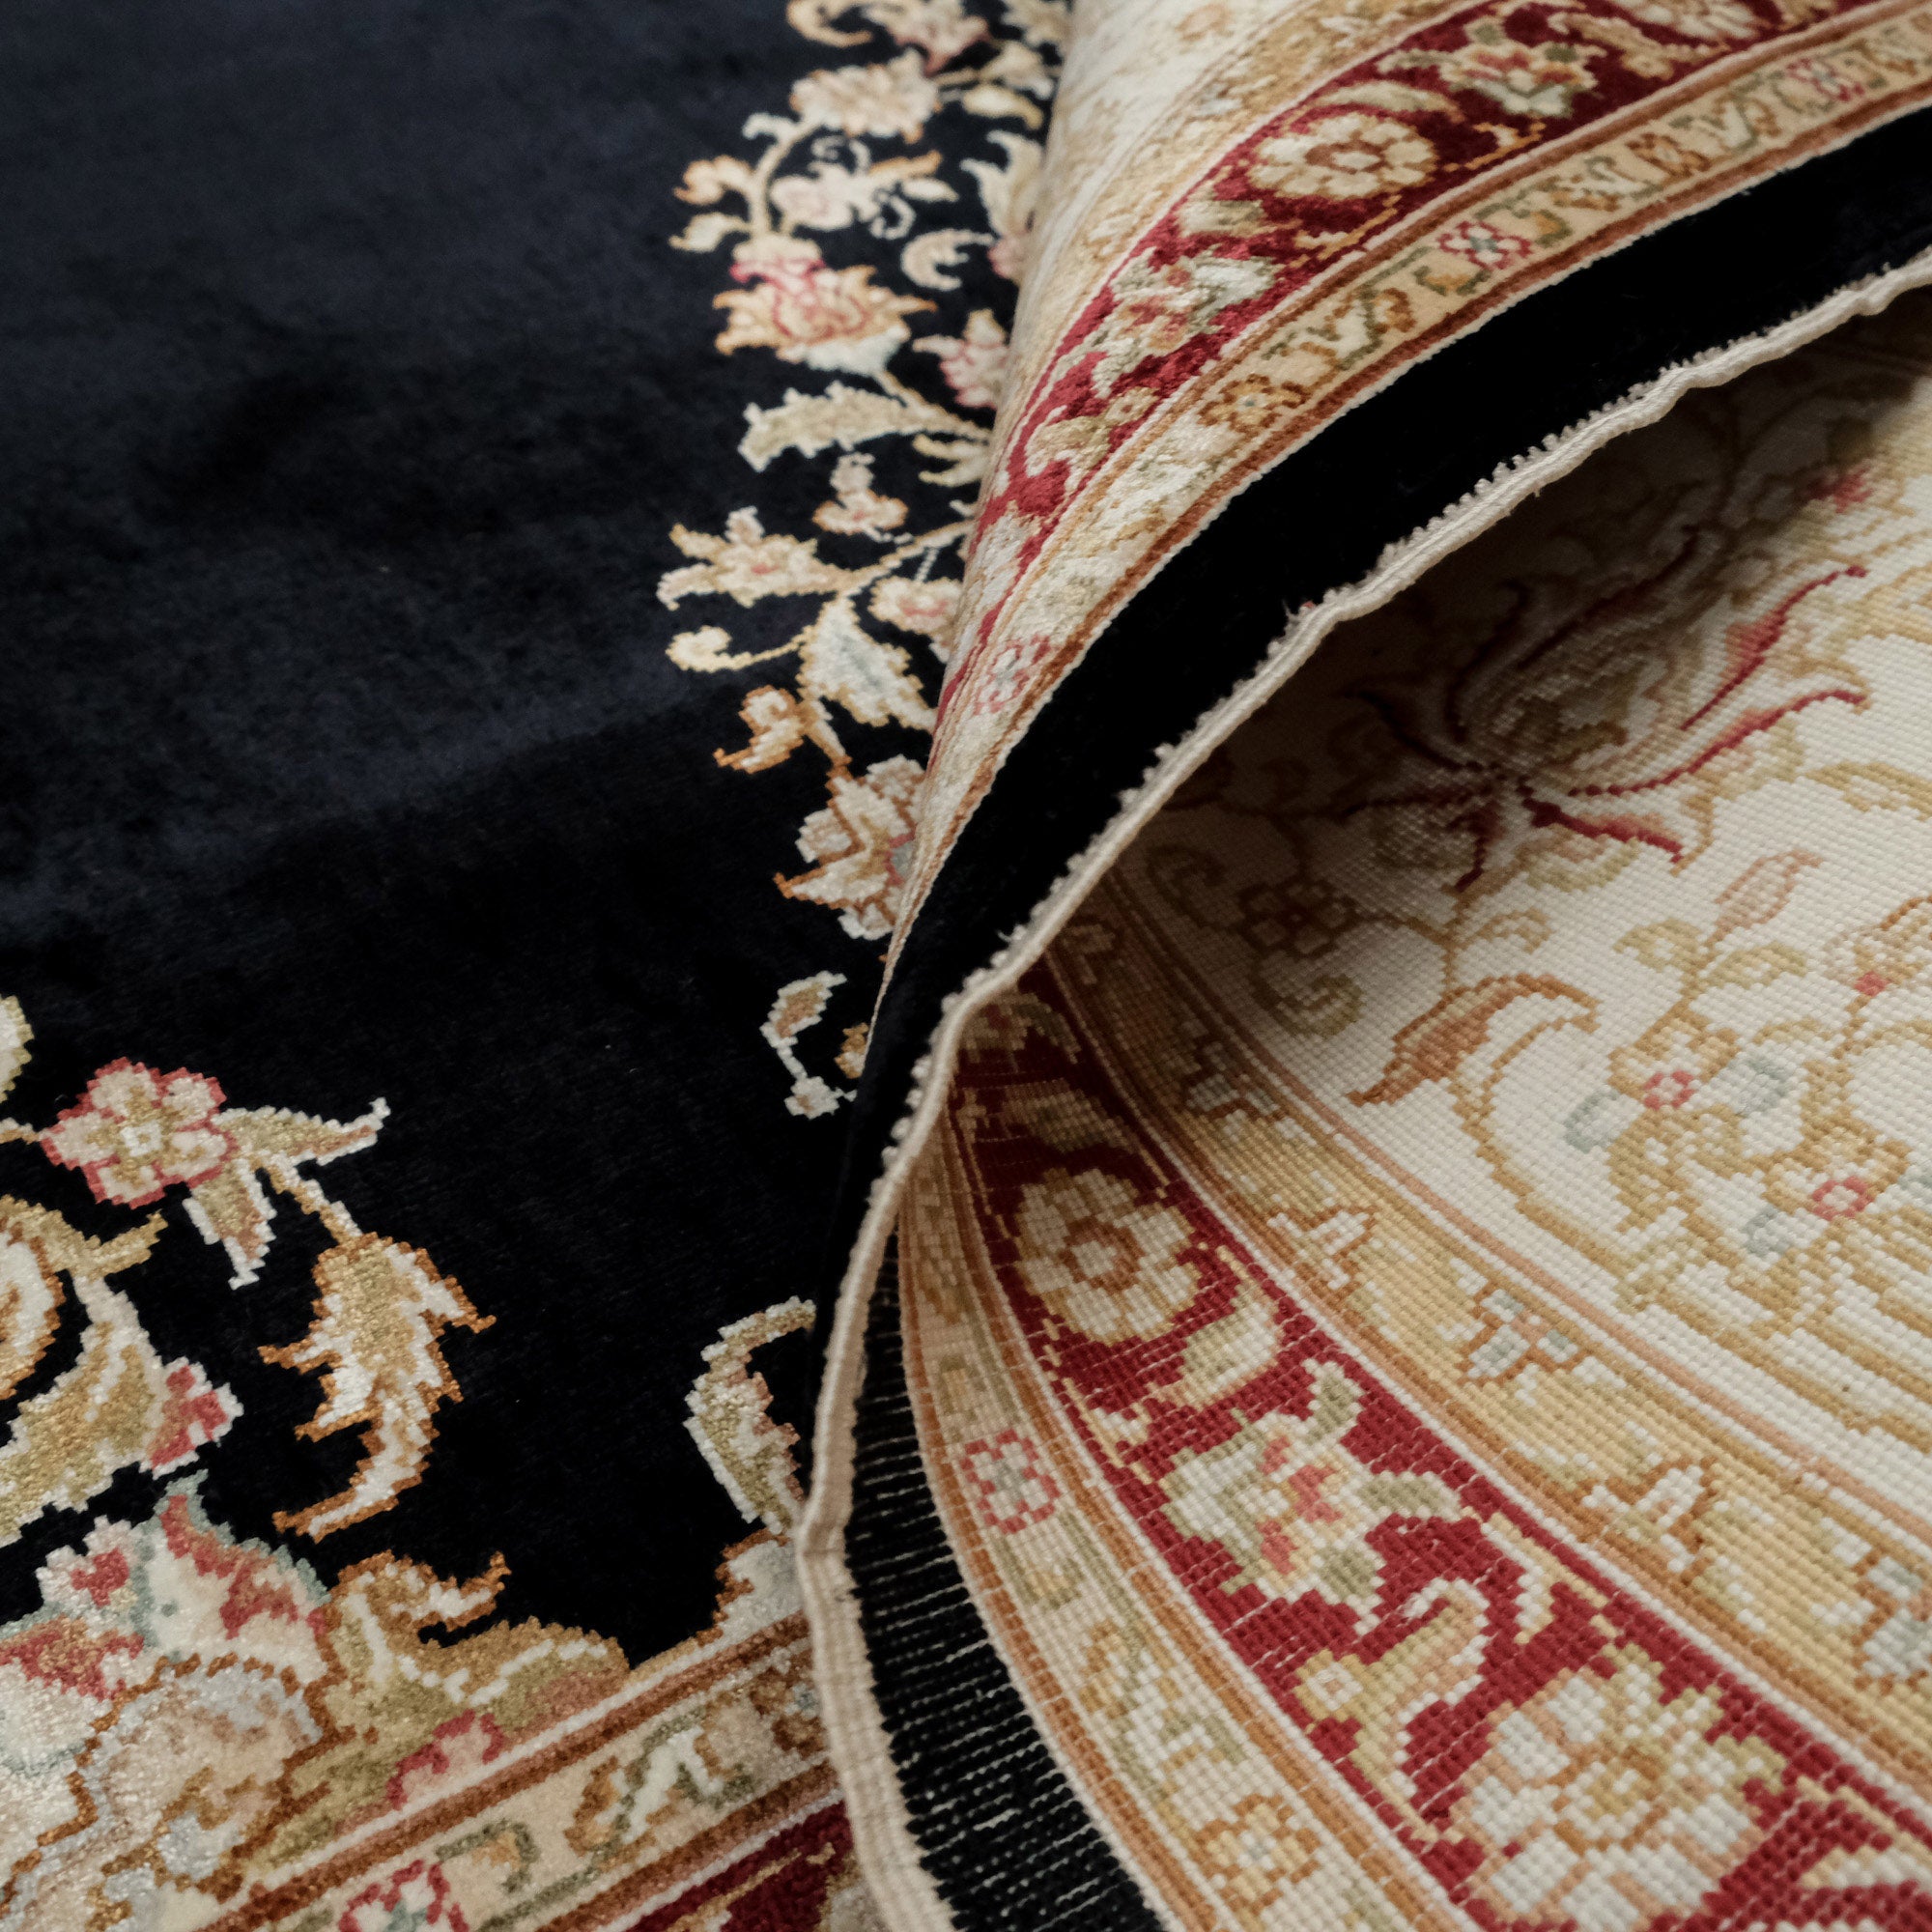 Hand Woven Black Medallion Patterned Carpet